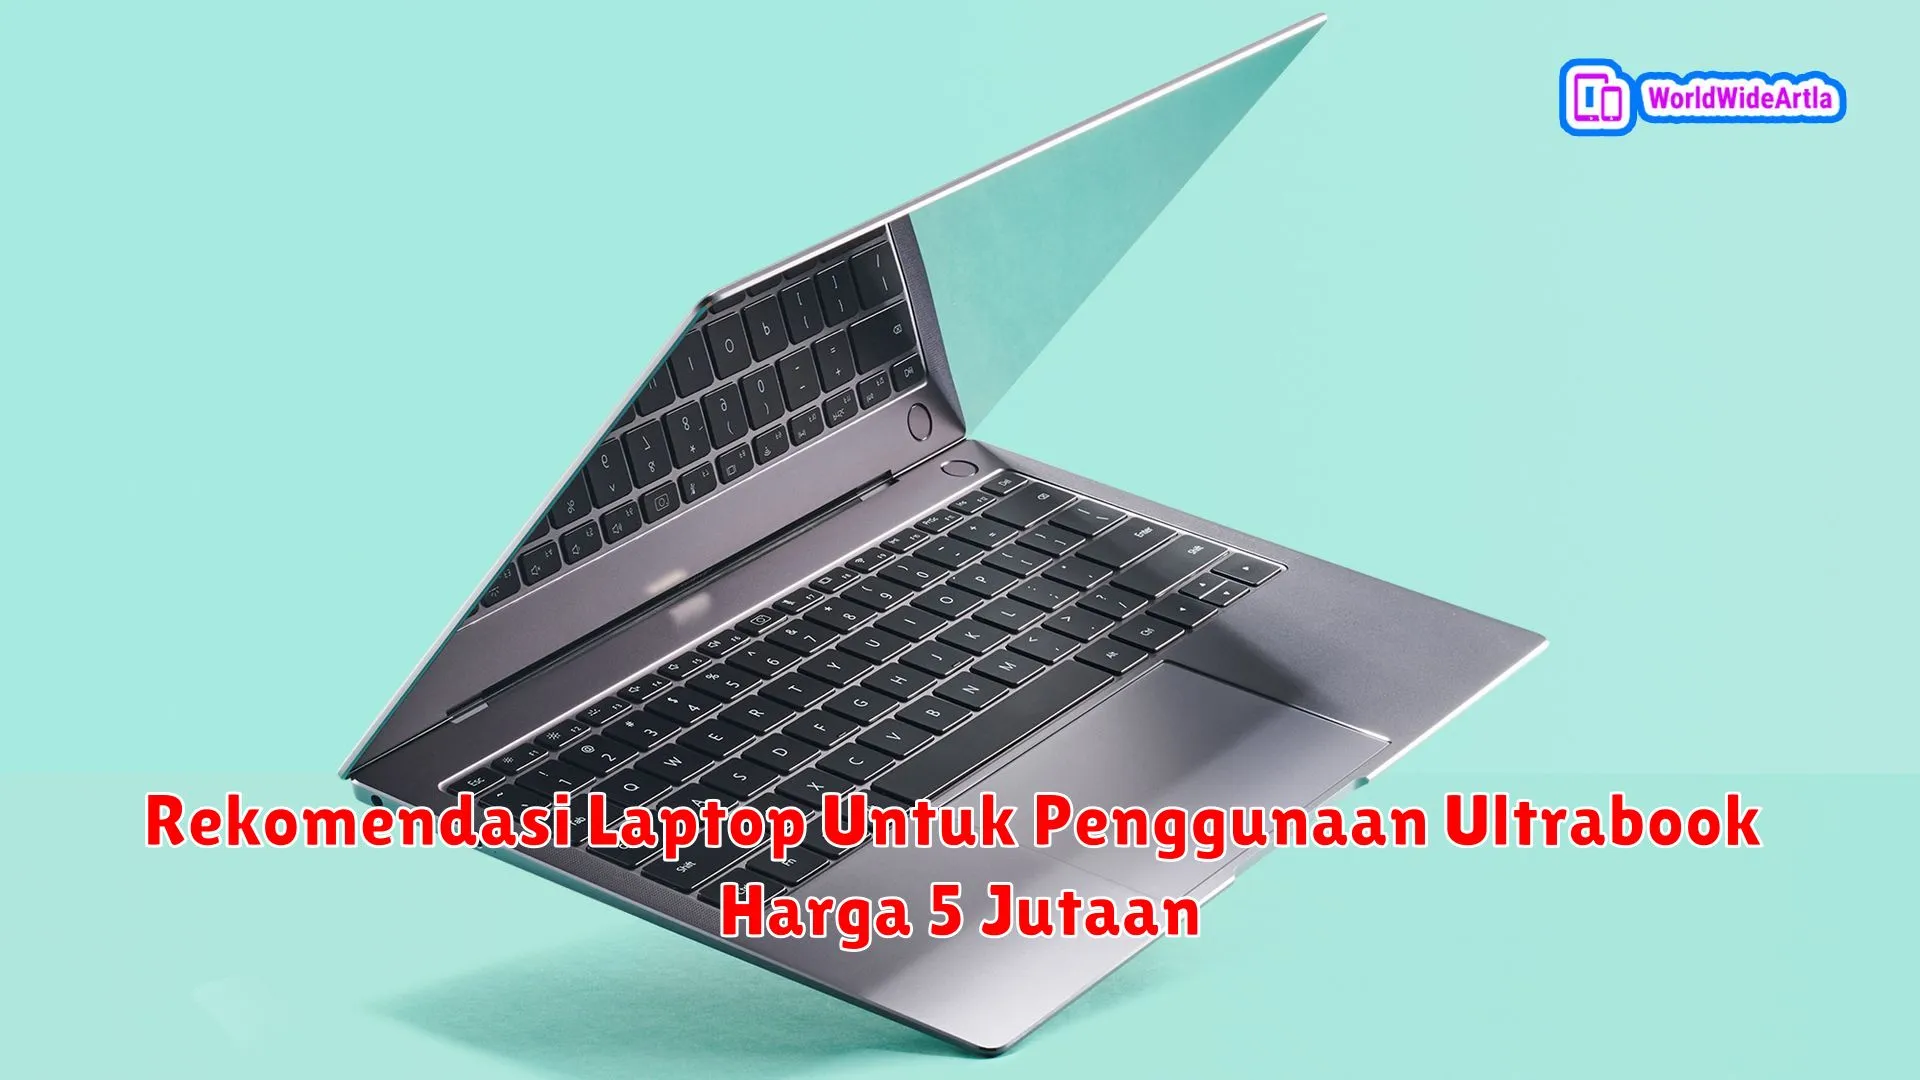 Rekomendasi Laptop Untuk Penggunaan Ultrabook Harga 5 Jutaan